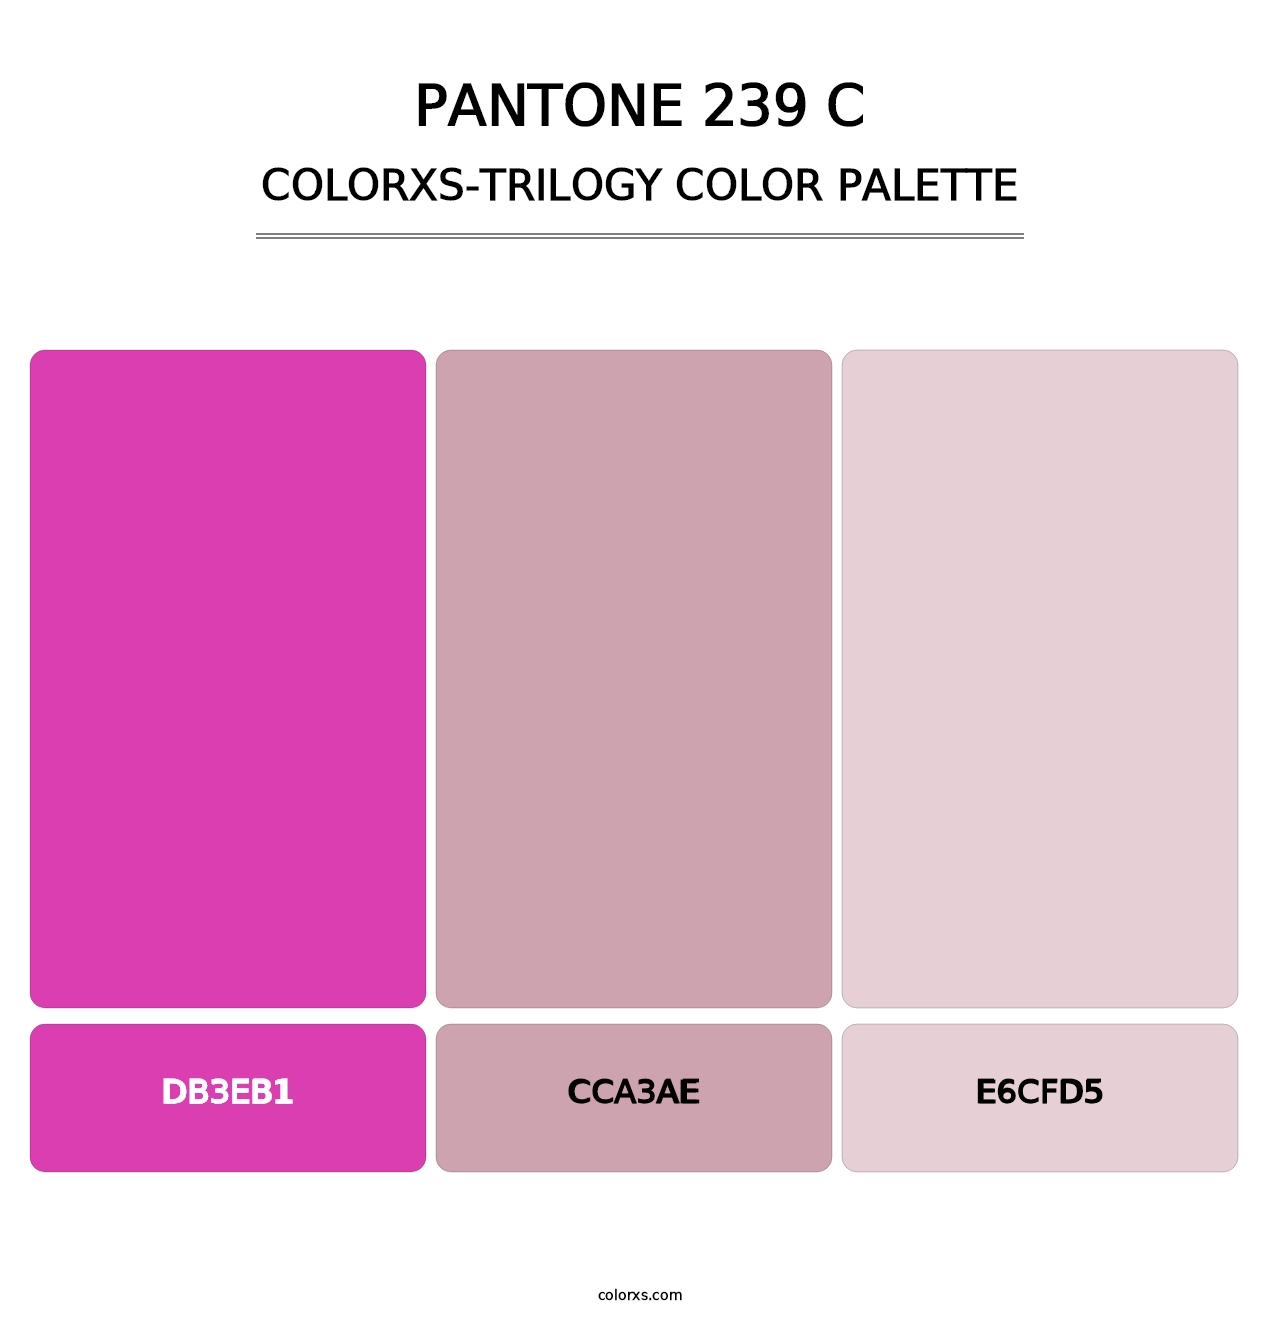 PANTONE 239 C - Colorxs Trilogy Palette